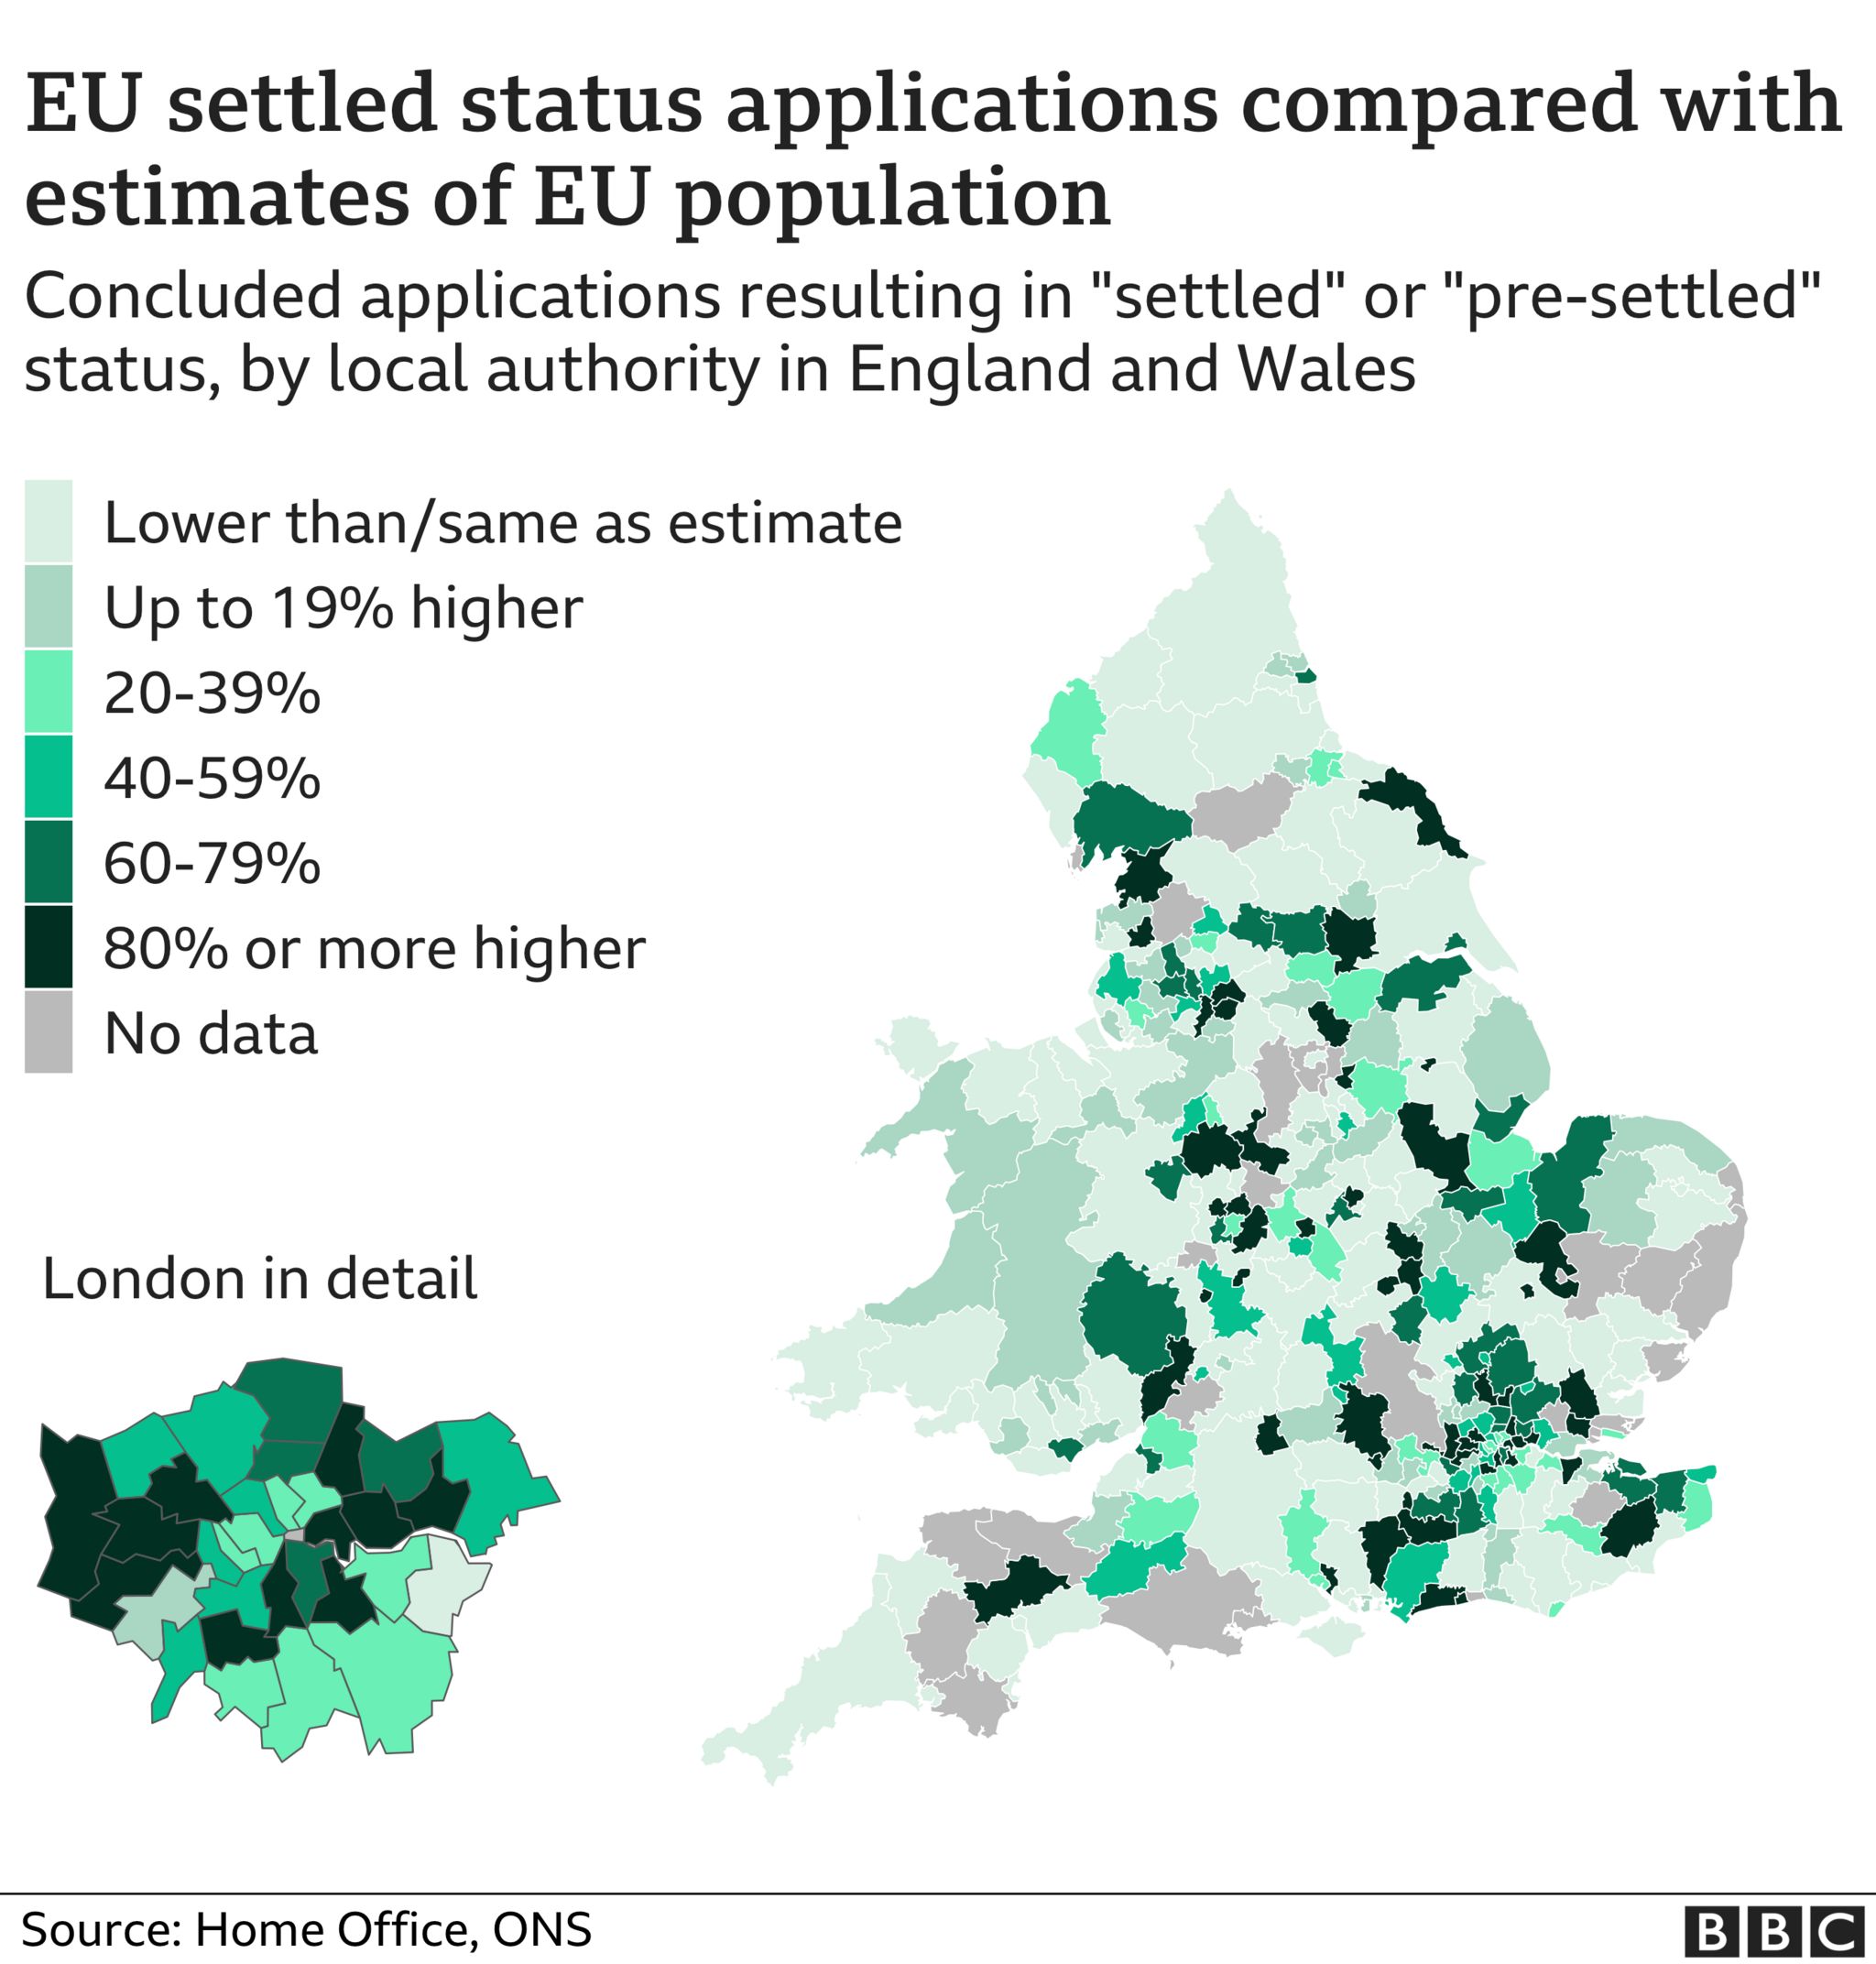 Карта, показывающая, в каких районах была наибольшая разница между предыдущей оценкой численности населения граждан ЕС и количеством претендентов на схему поселения